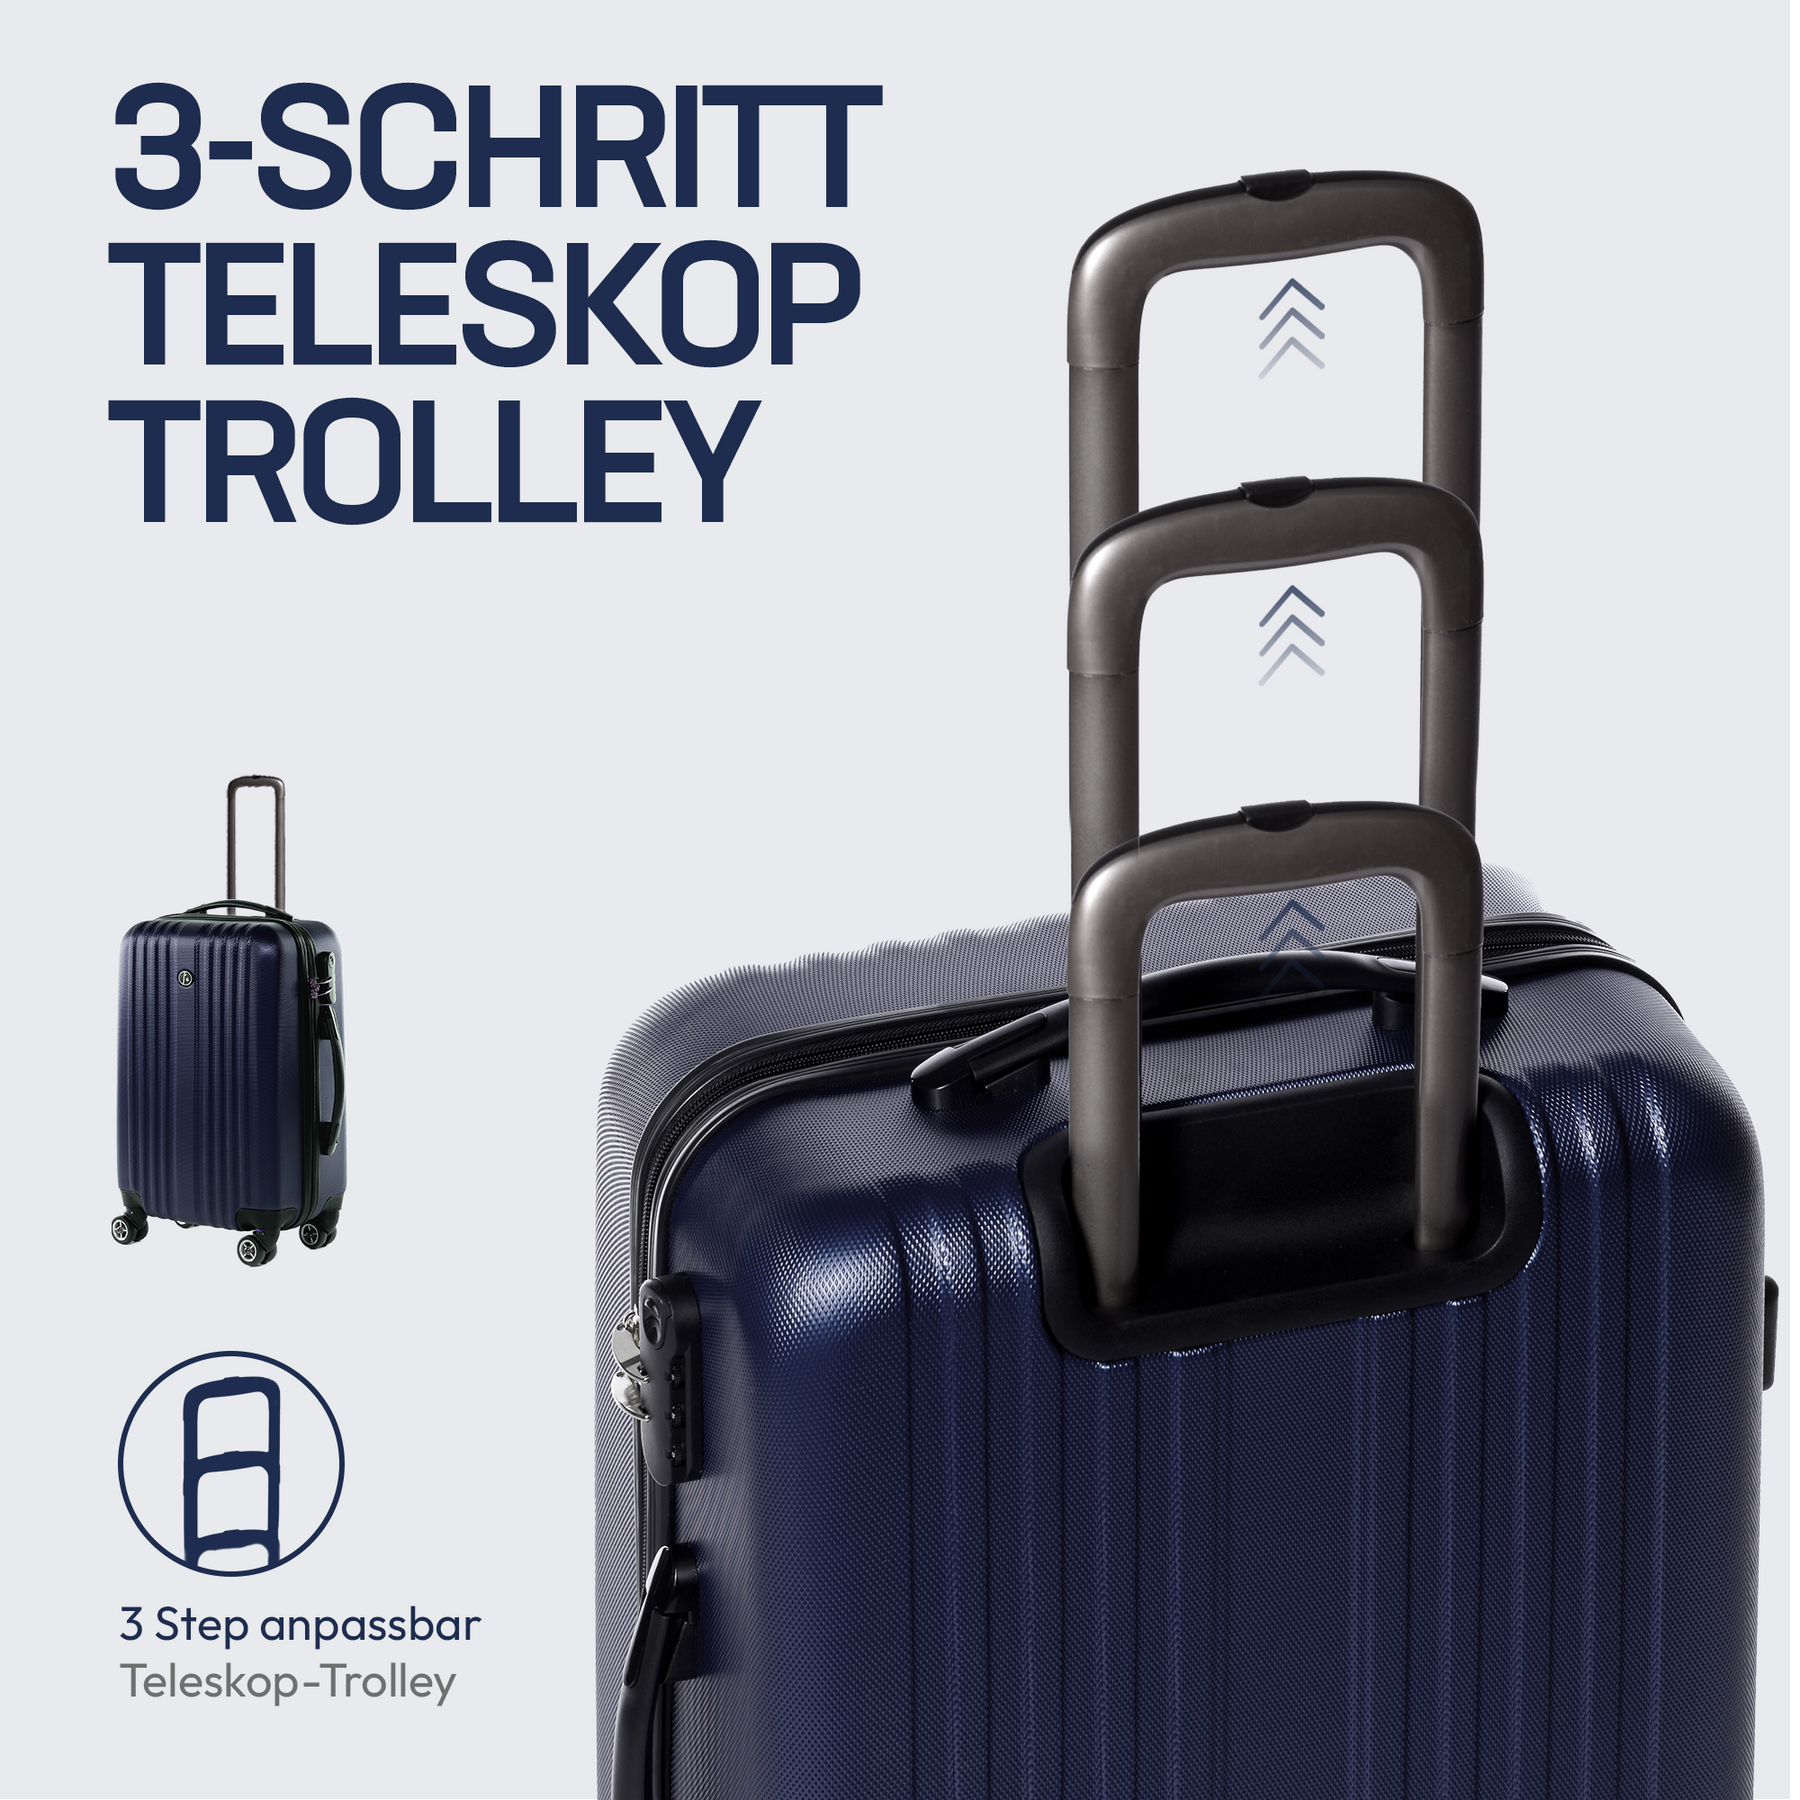 Set de valise rigide bleu TOULOUSE ensemble de bagage extensible